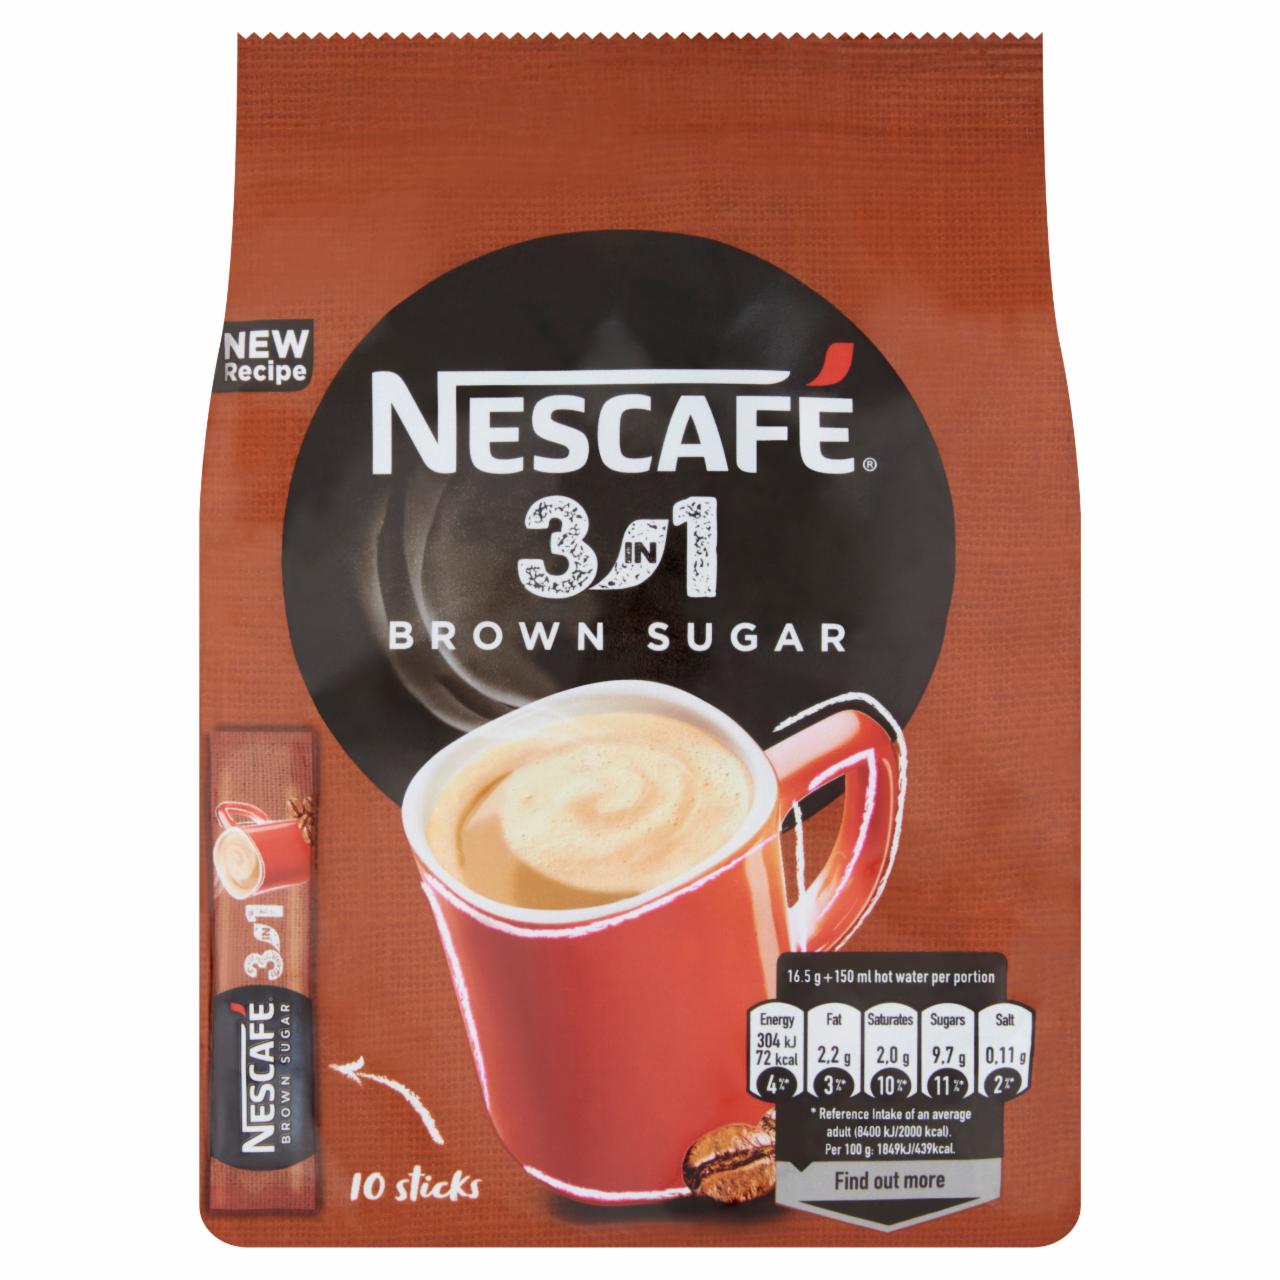 Képek - Nescafé 3in1 Brown Sugar azonnal oldódó kávéspecialitás barnacukorral 10 x 16,5 g (165 g)